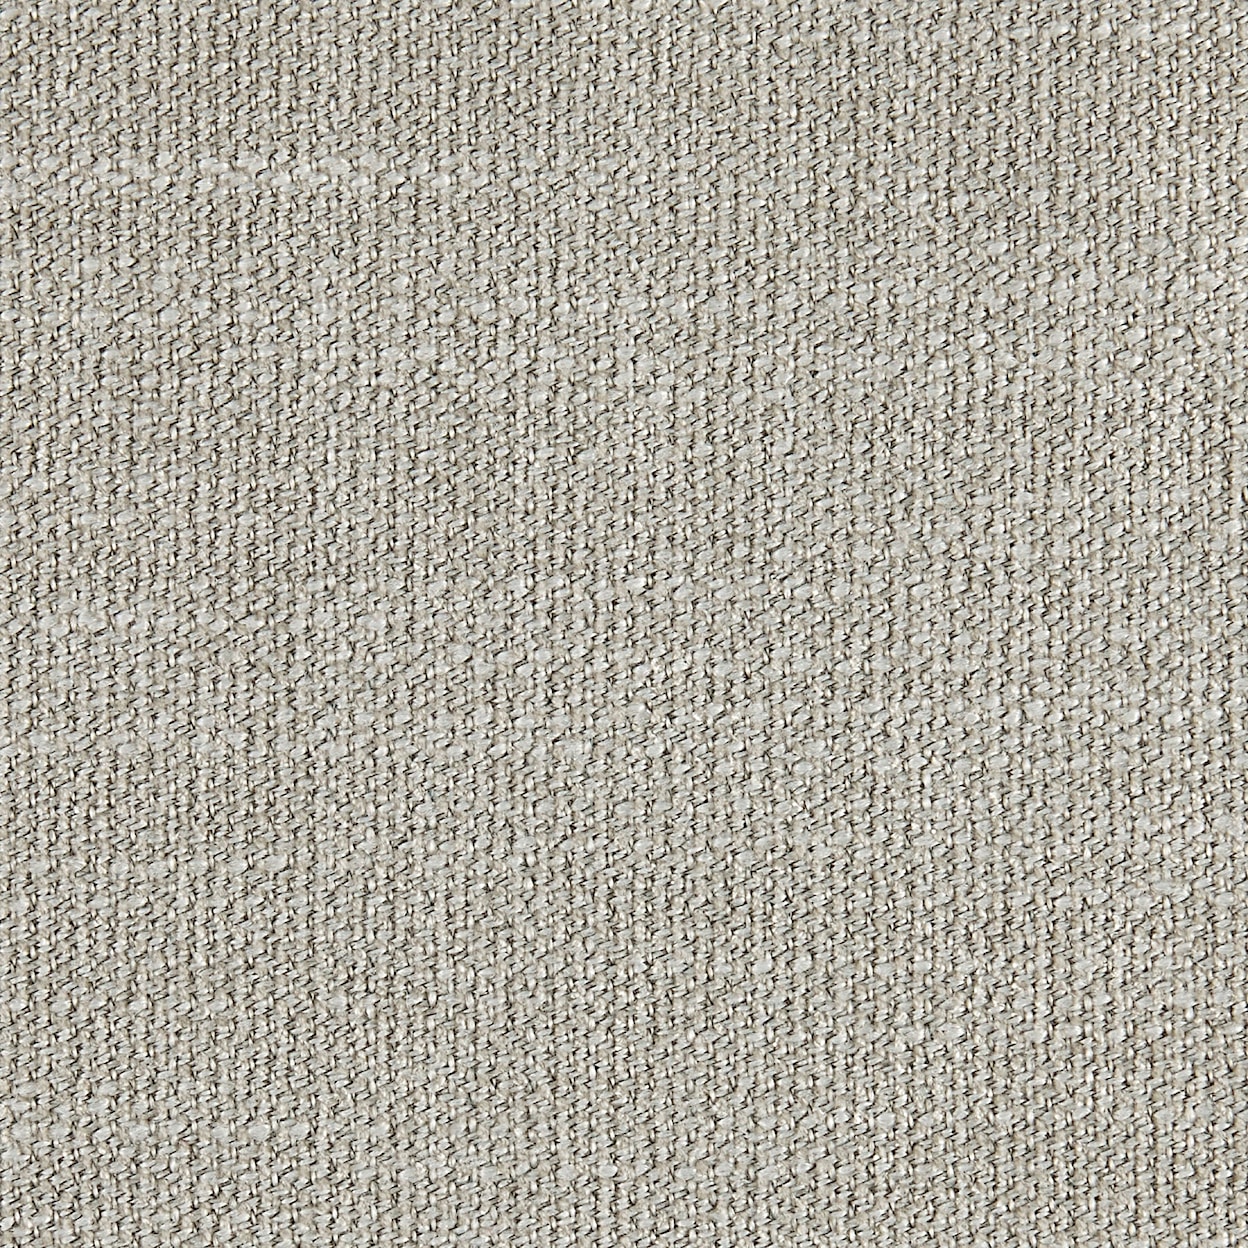 B587-010 Fabric B587-010